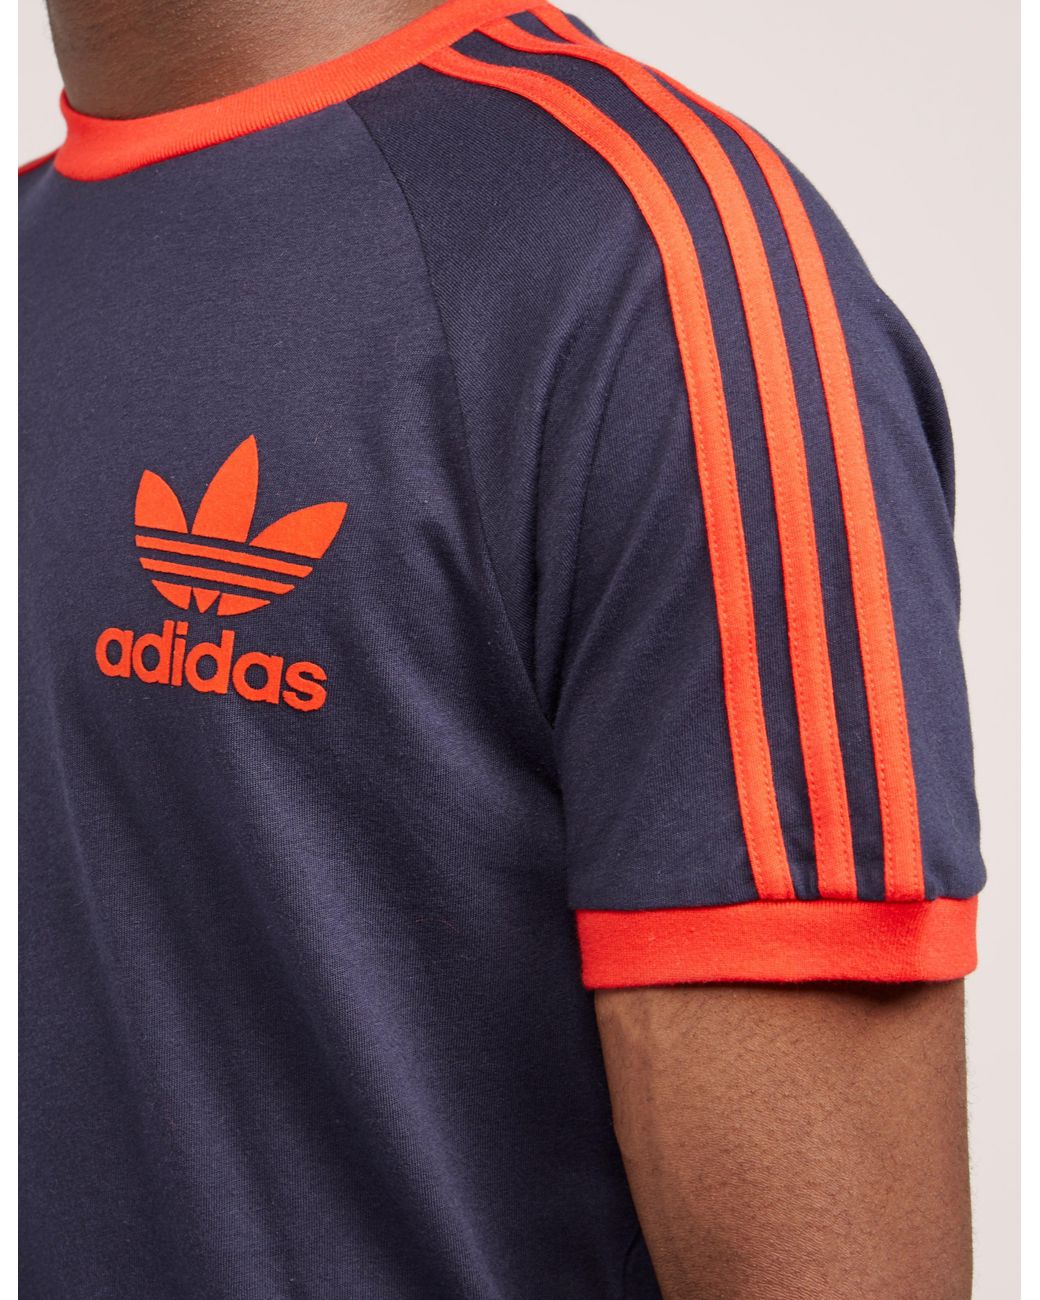 adidas Originals Mens California Short Sleeve T-shirt Navy/red in Blue for  Men | Lyst